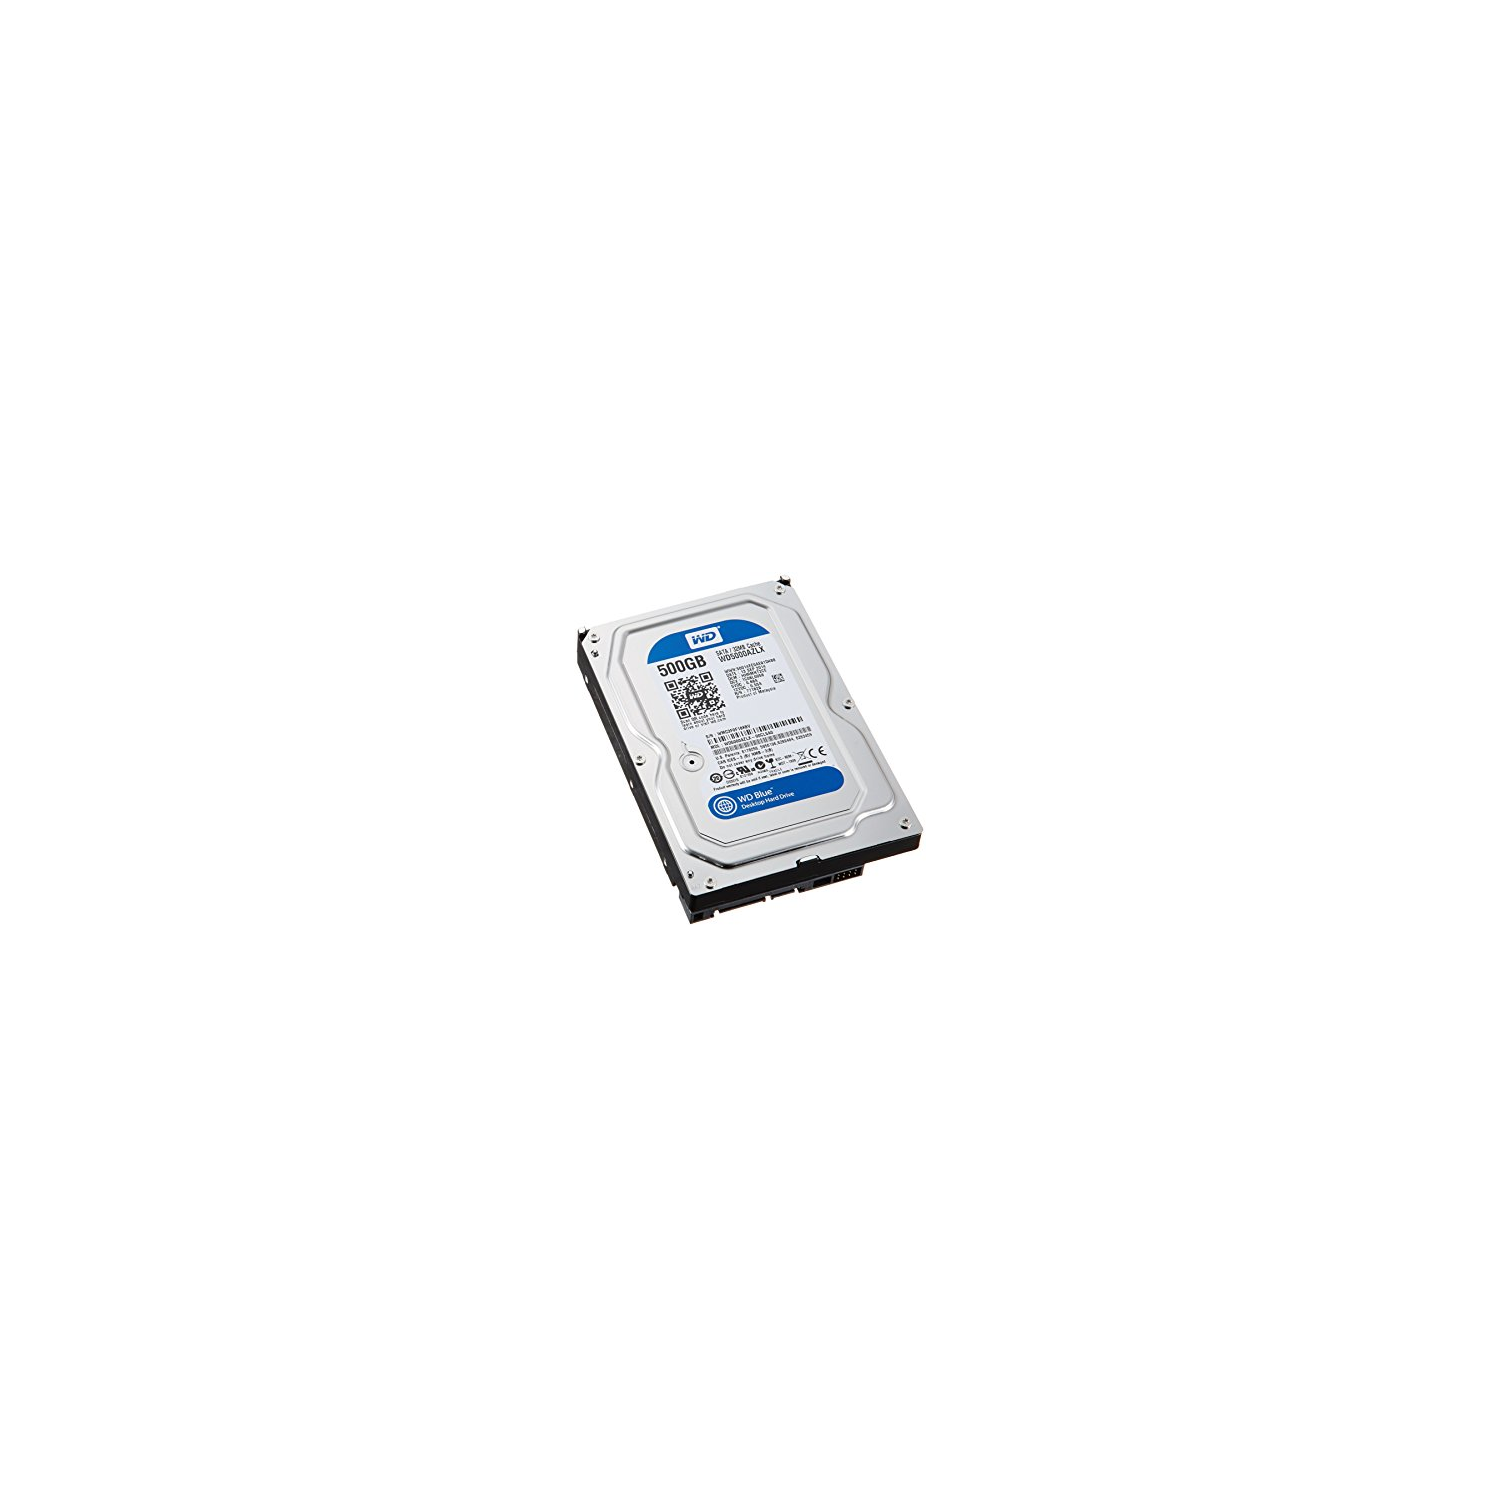 Western Digital 500GB 7200 rpm SATA 6 Gb/s Hard Drive (WD5000AZLX)